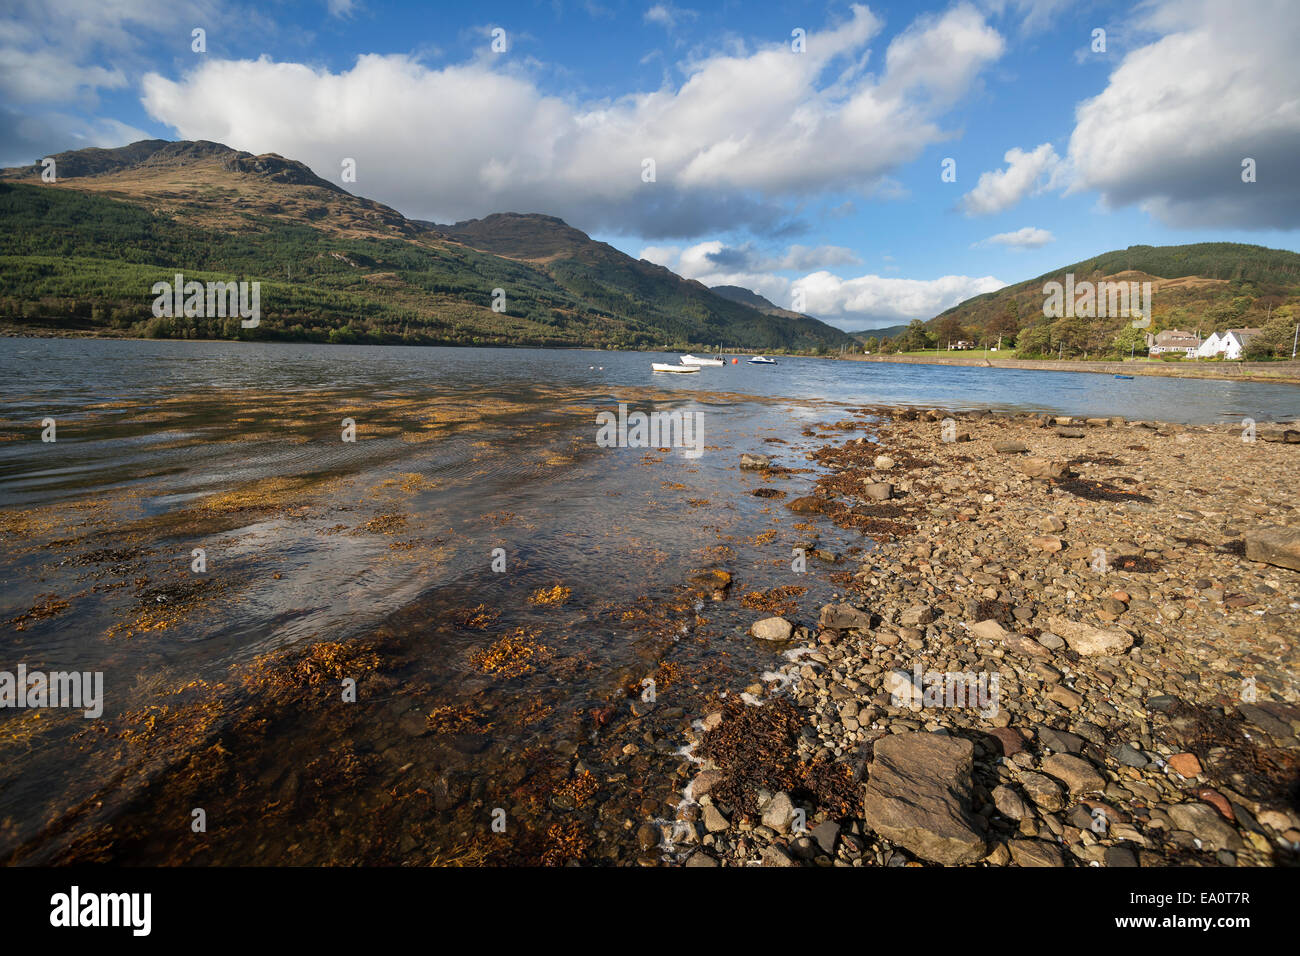 Le Loch Long ; ; ; Arrochar village ; les touristes ; bateaux ; ; Argyll Bute ; montagnes ; Écosse ; UK Banque D'Images